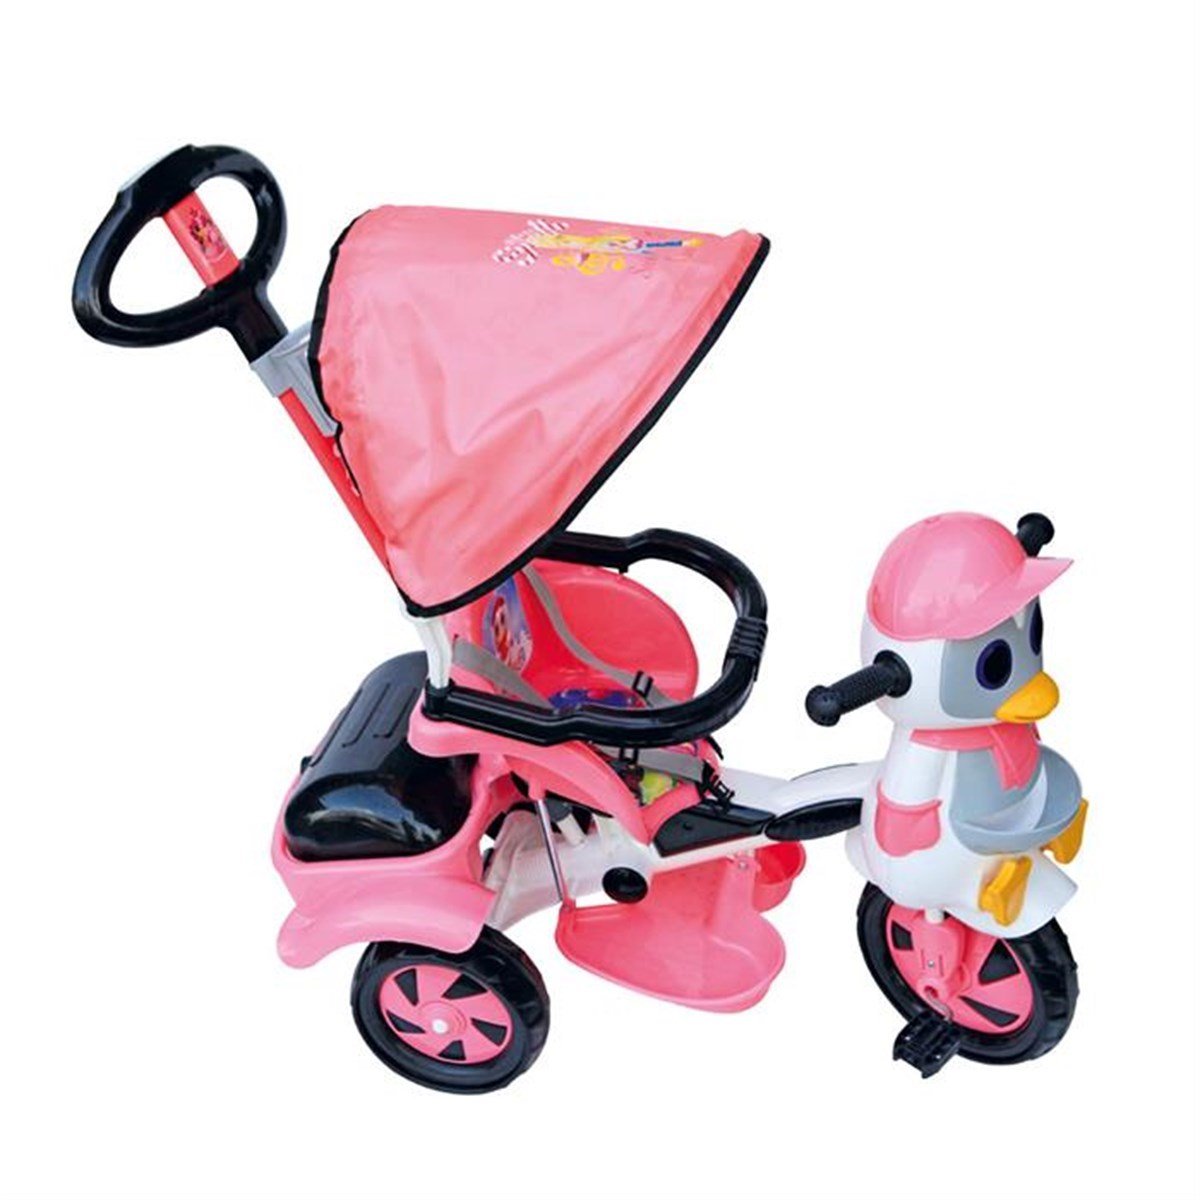 Penguenli Arkadan Tutacaklı Üç Tekerlekli Dilaver Bisiklet Fiyatı -  Taşpınar Baby Oyuncakları - Doğan Oyuncak Dünyası